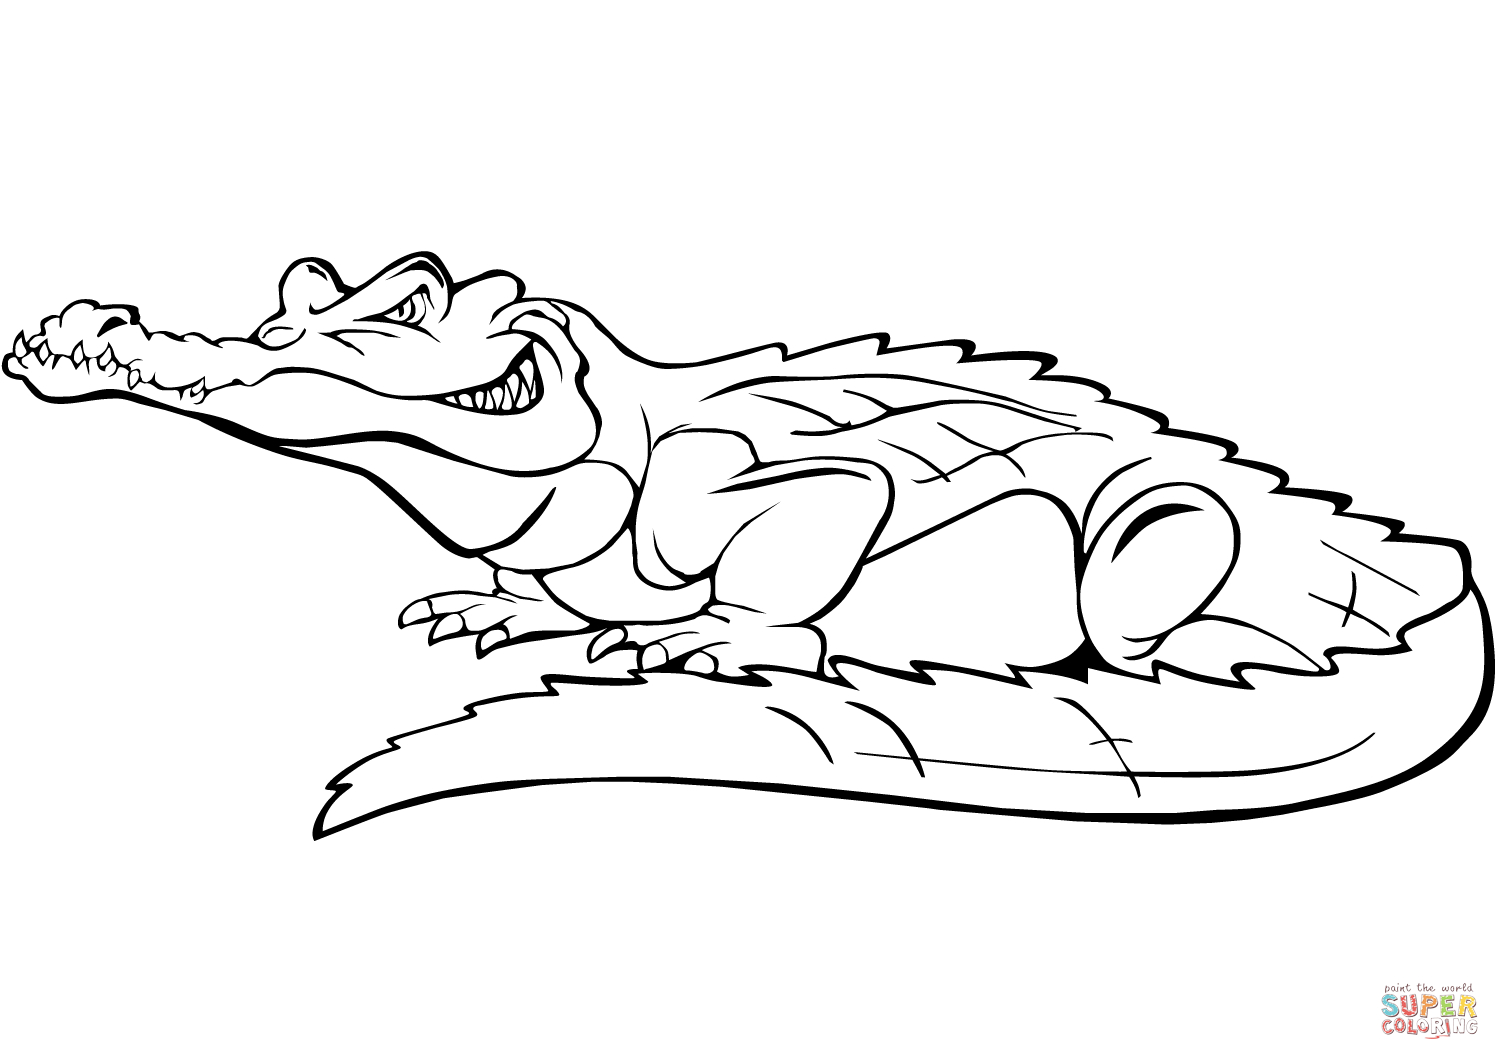 Ausmalbild: Comic-Krokodil | Ausmalbilder Kostenlos Zum bestimmt für Malvorlage Krokodil